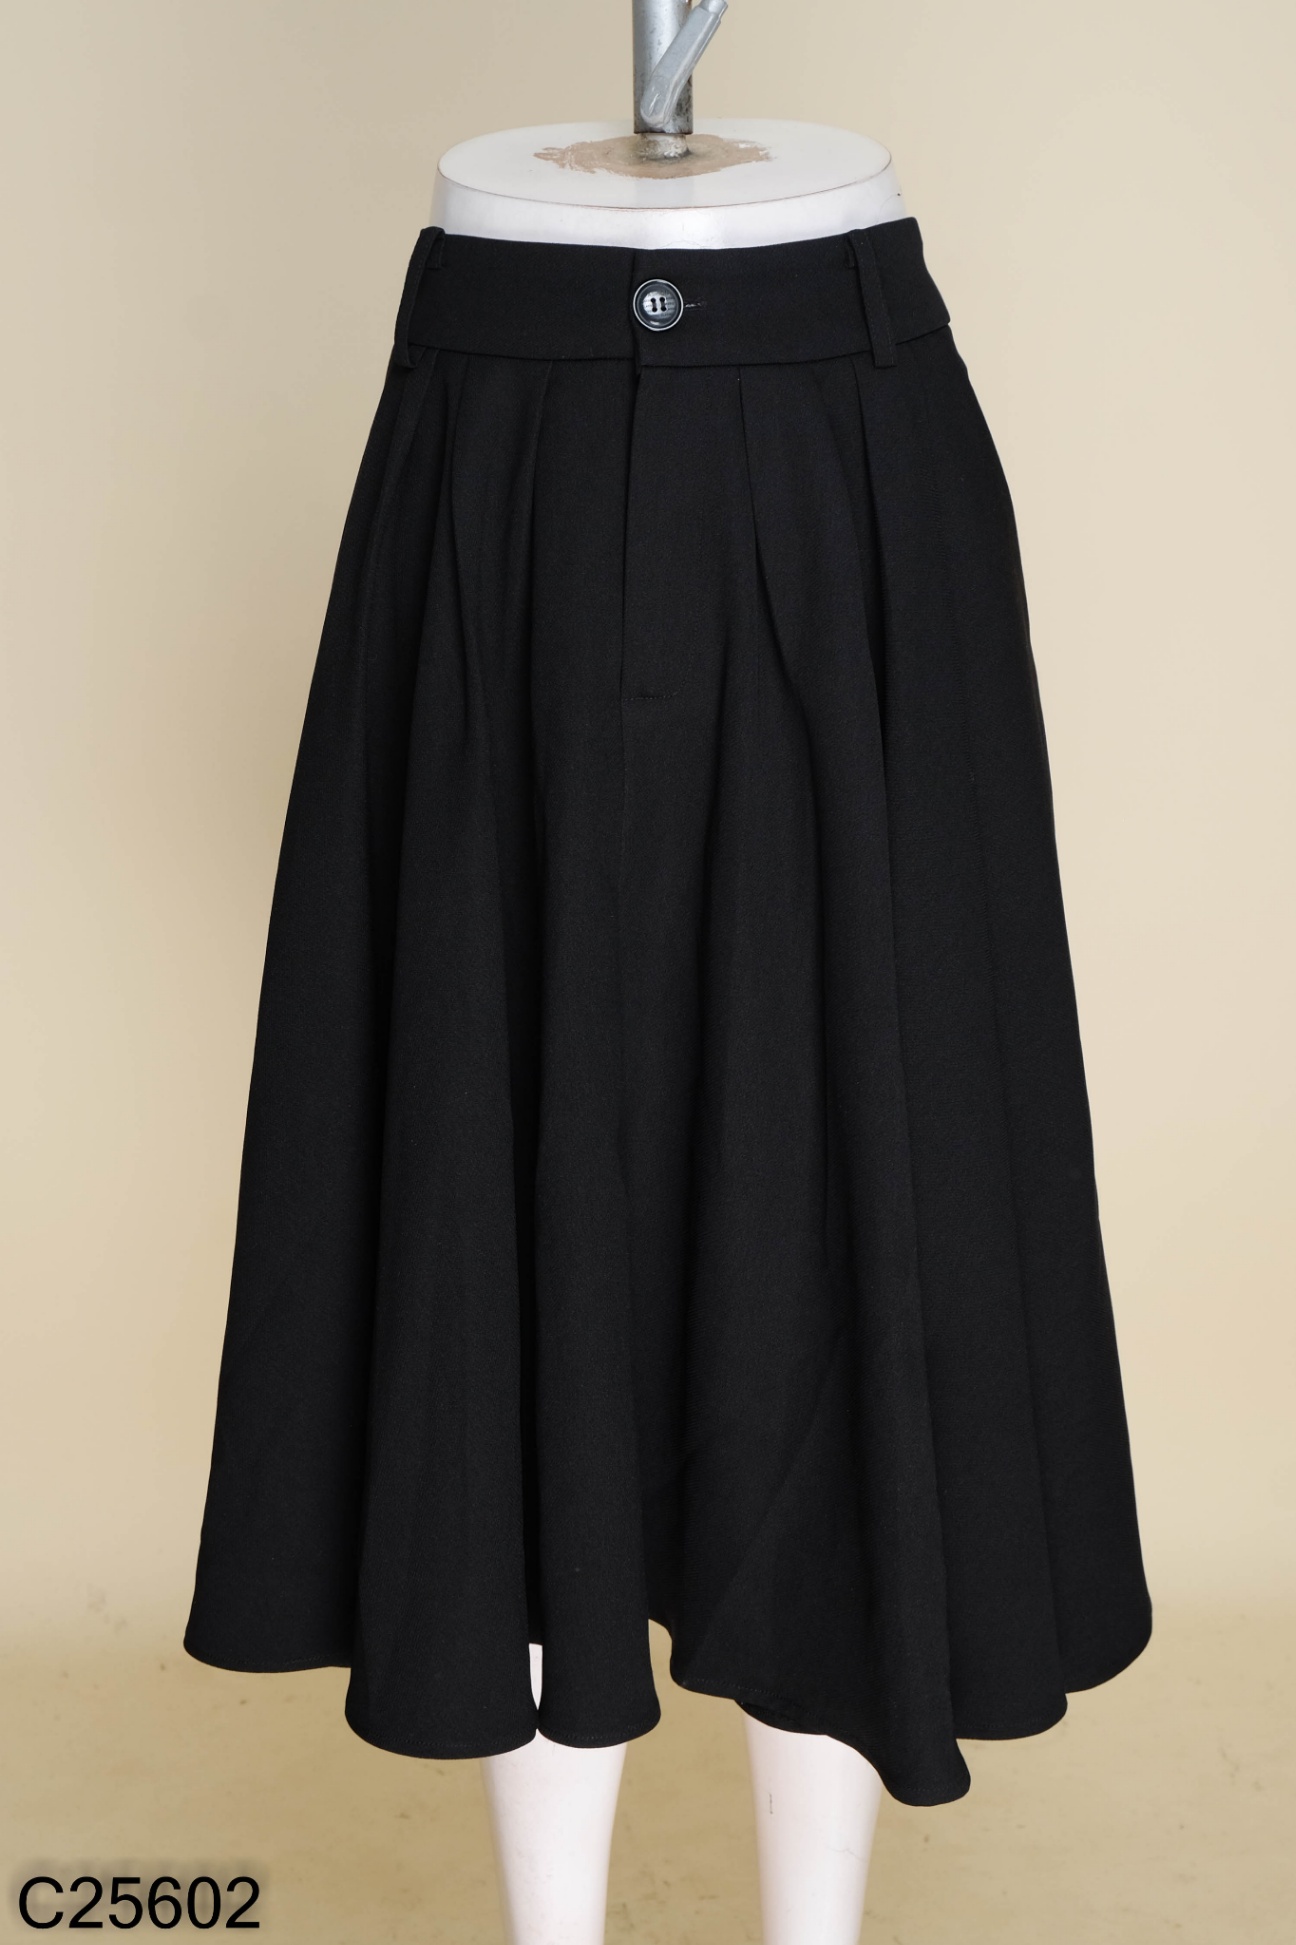 THỜI TRANG TRẺ - Chân váy xòe ngắn màu đen thời trang, năng động | Shopee  Việt Nam